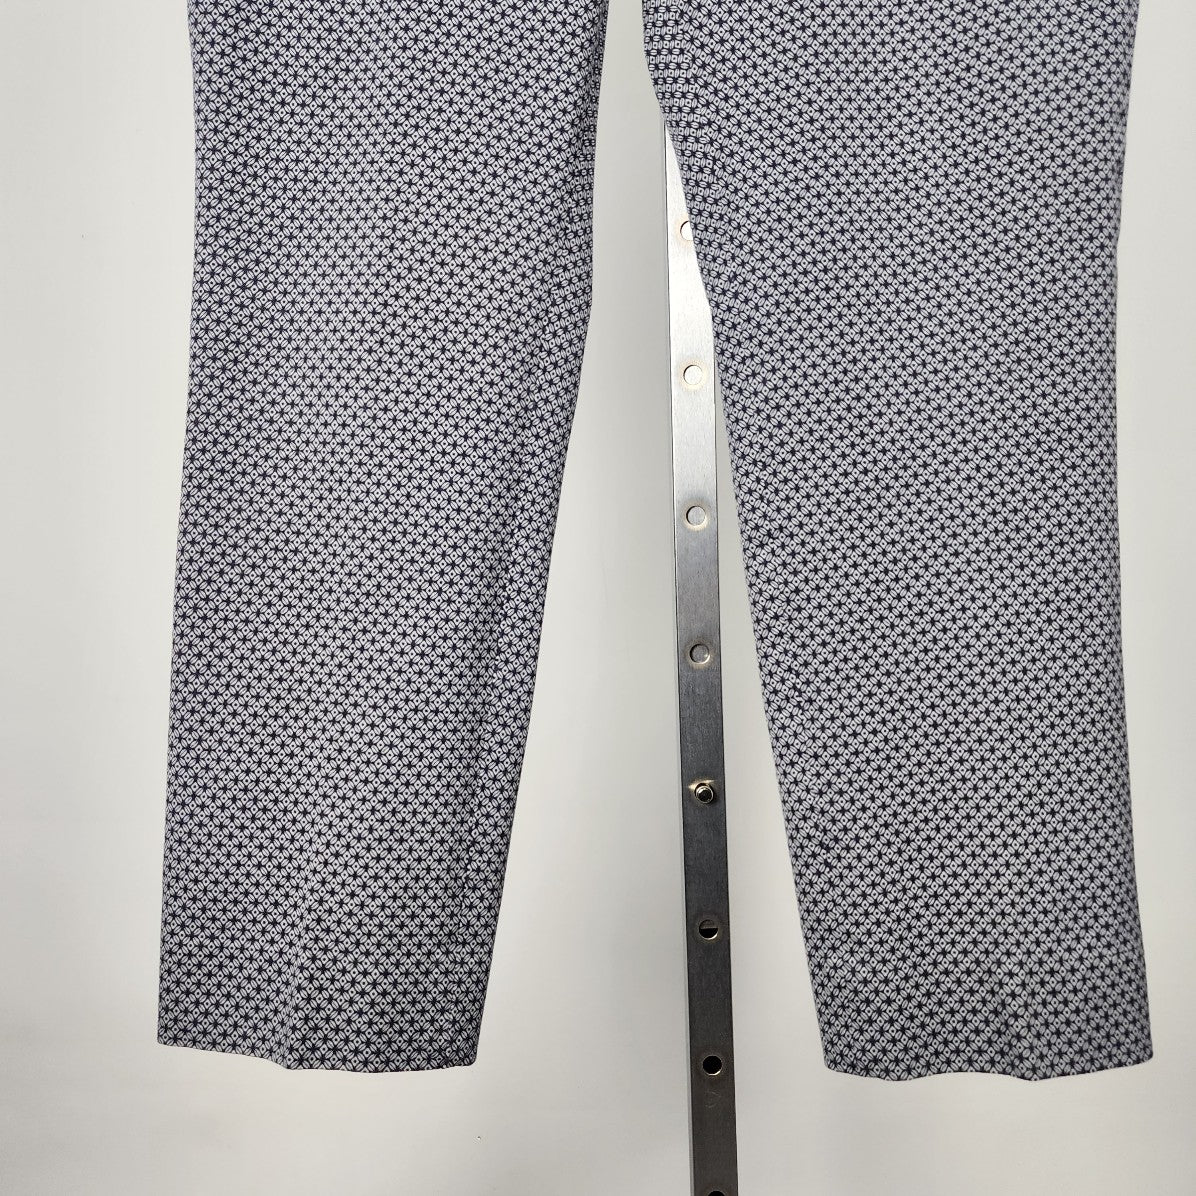 Banana Republic Blue Geometric Print Cropped Dress Pants Size 12